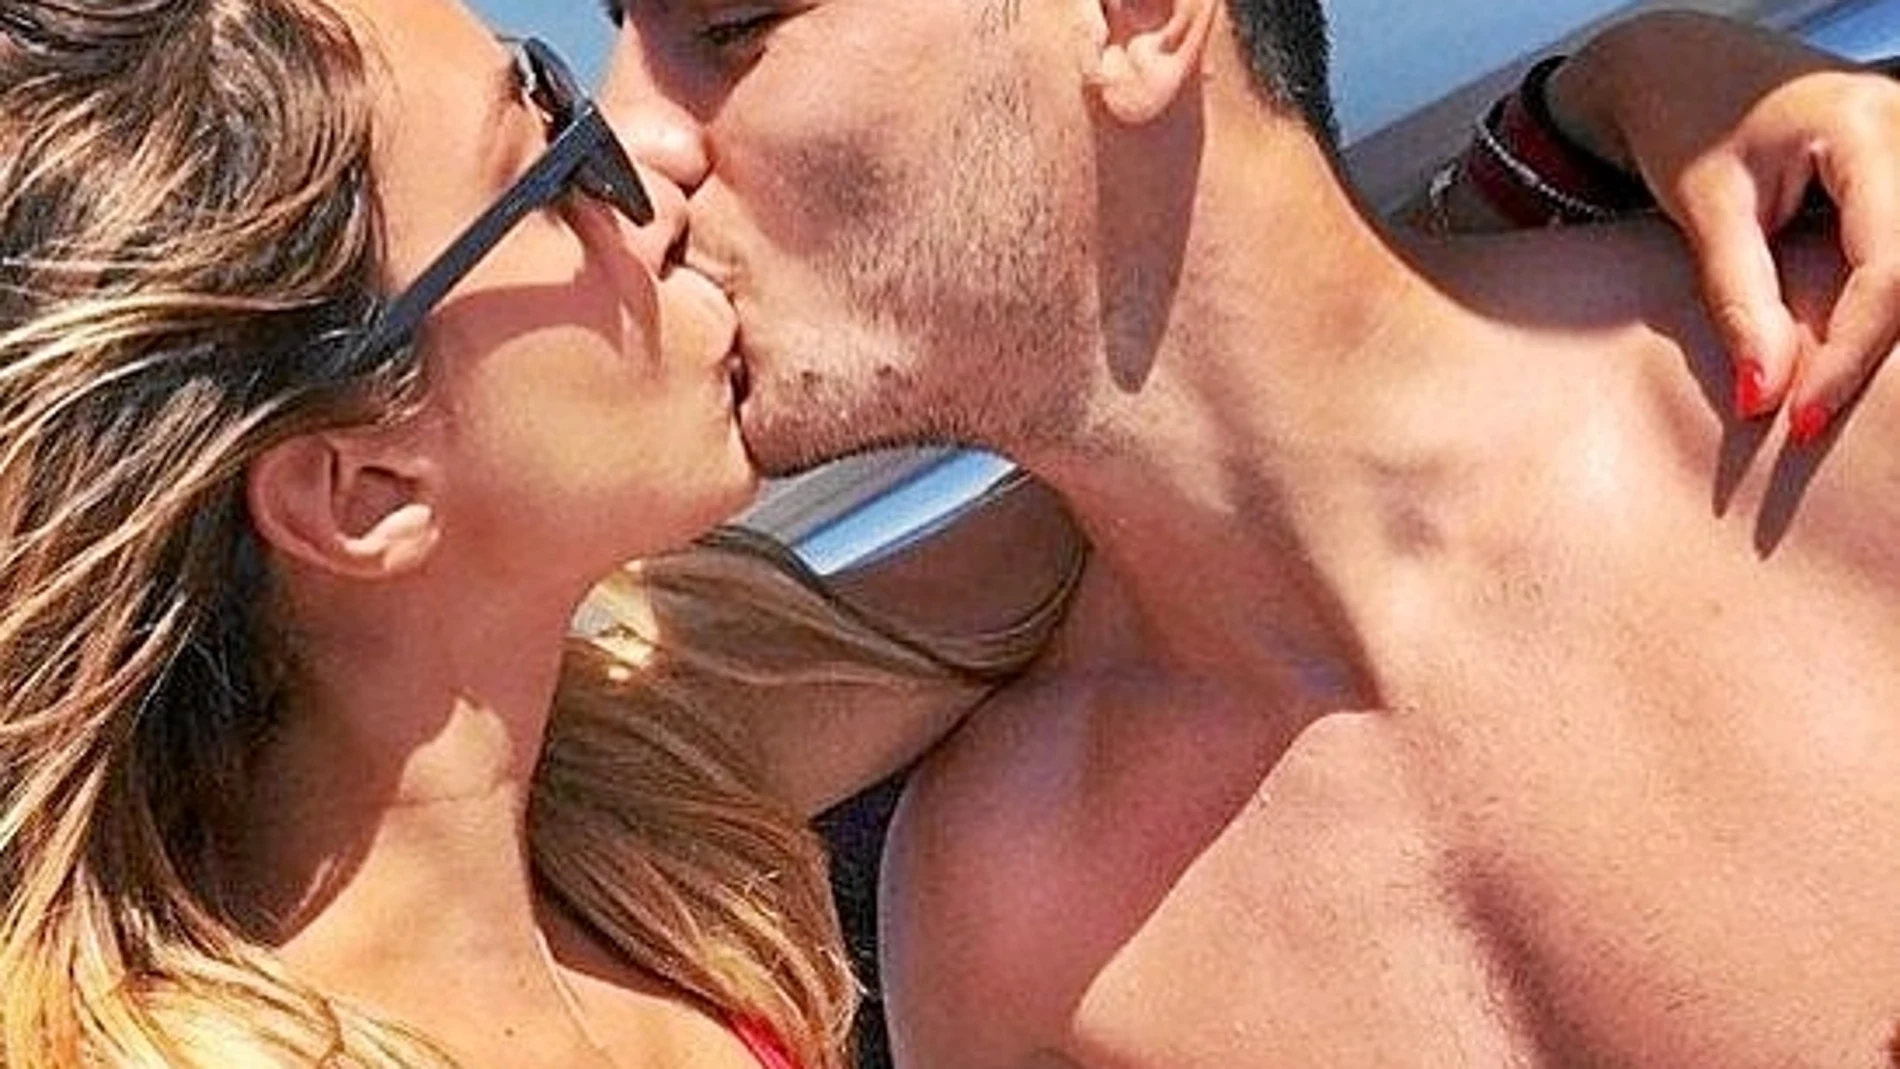 Álvaro Morata disfruta de sus vacaciones junto a su novia, Alice Campello.